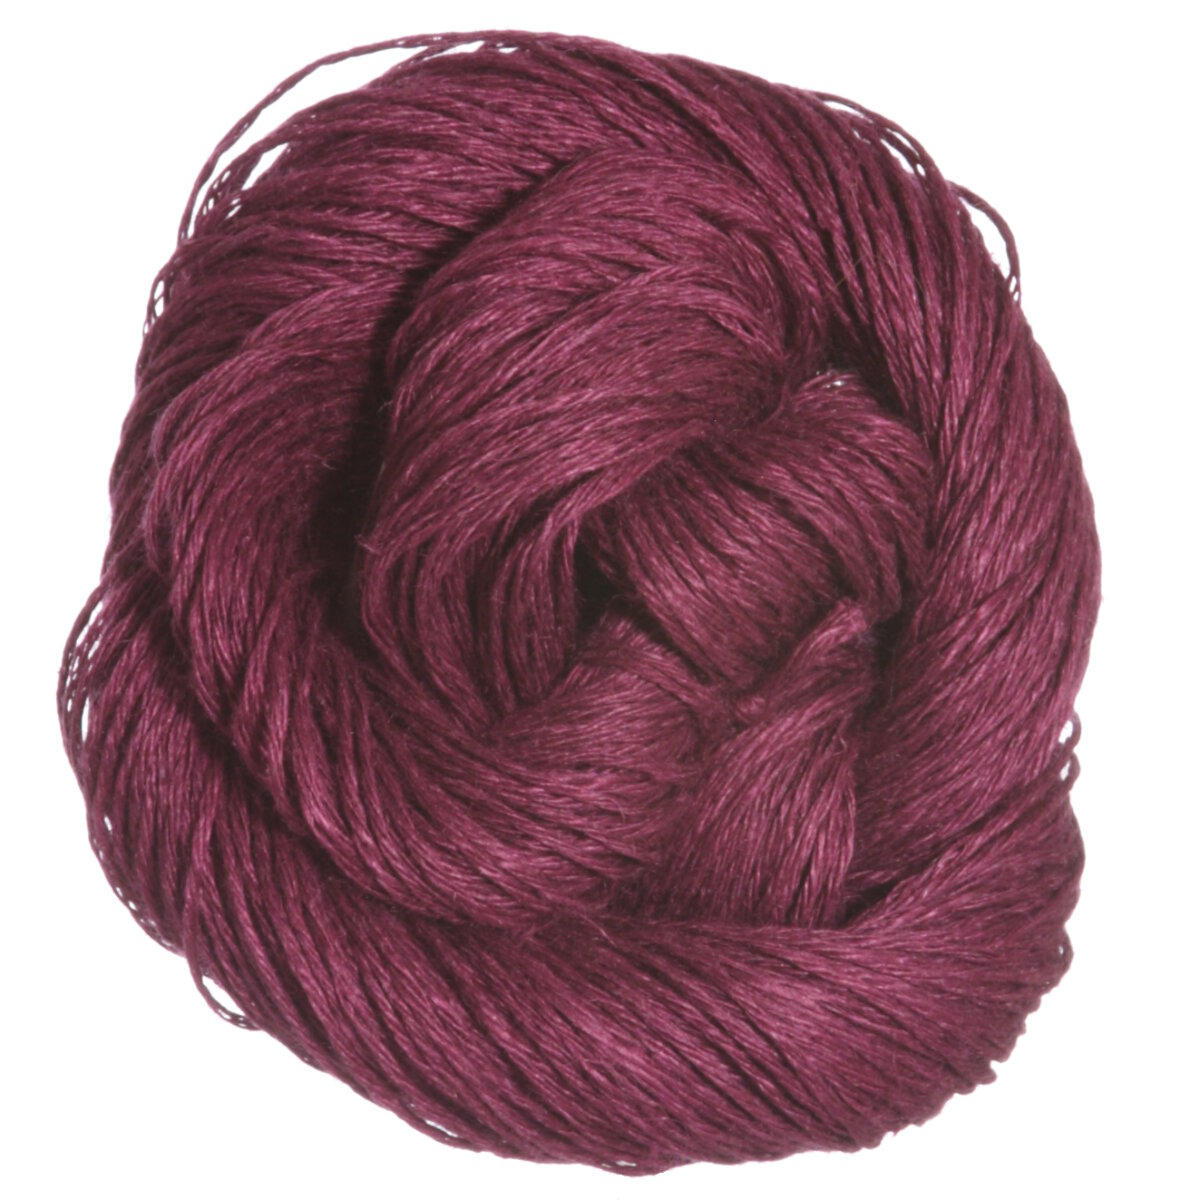 Fibra Natura Flax Yarn At Jimmy Beans Wool